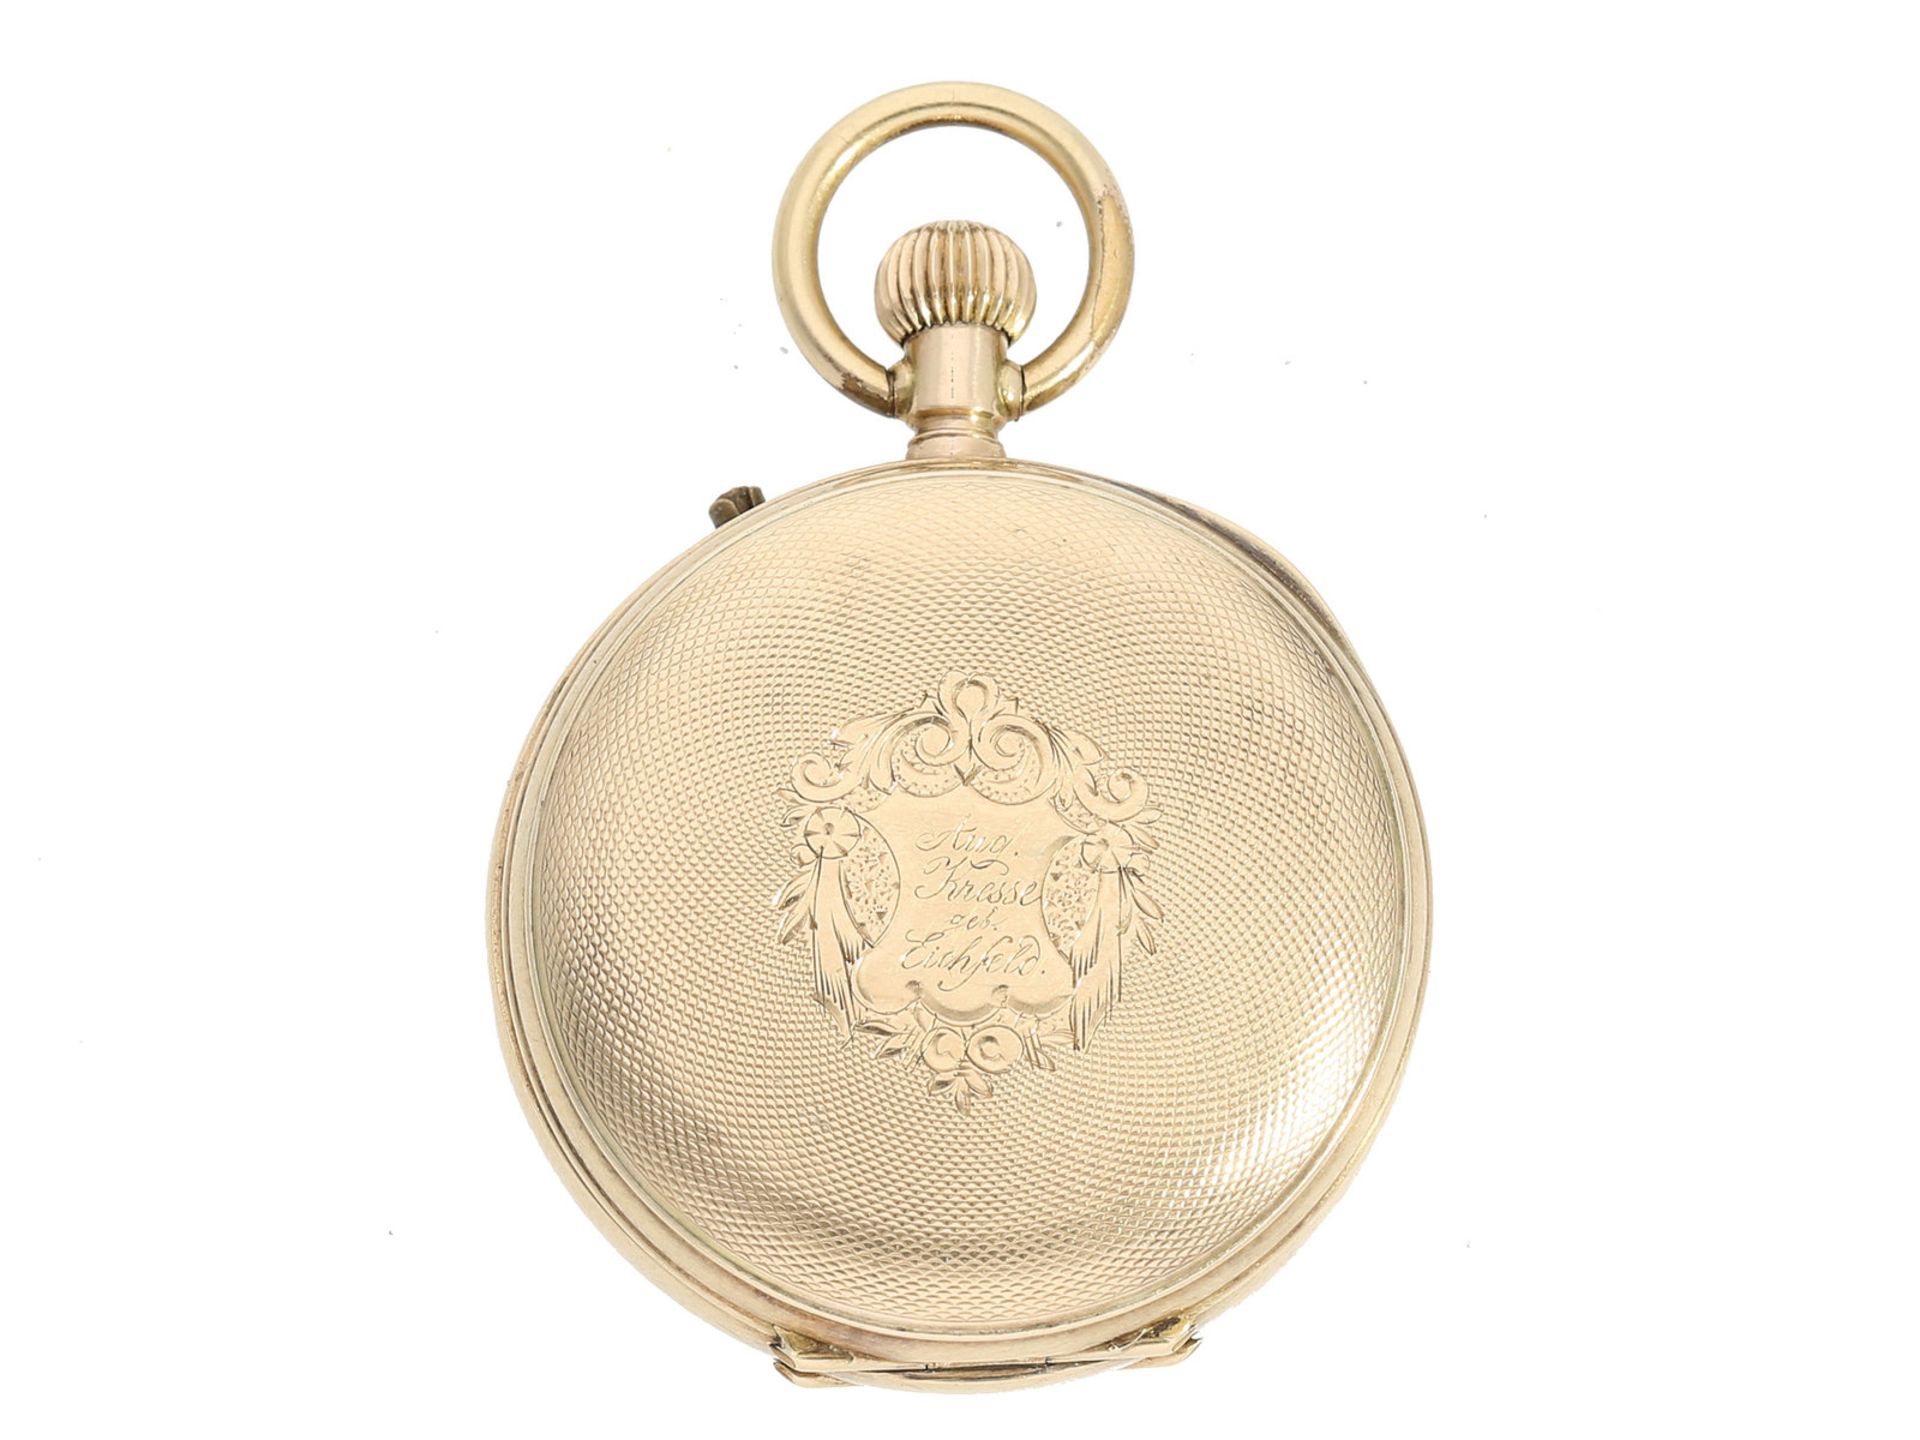 Taschenuhr: Damen-Taschenuhr, 14K Gold, ca. 1900 Ca. Ø32mm, ca. 29g, 14K Gold, Staubdeckel Metall, - Bild 2 aus 2